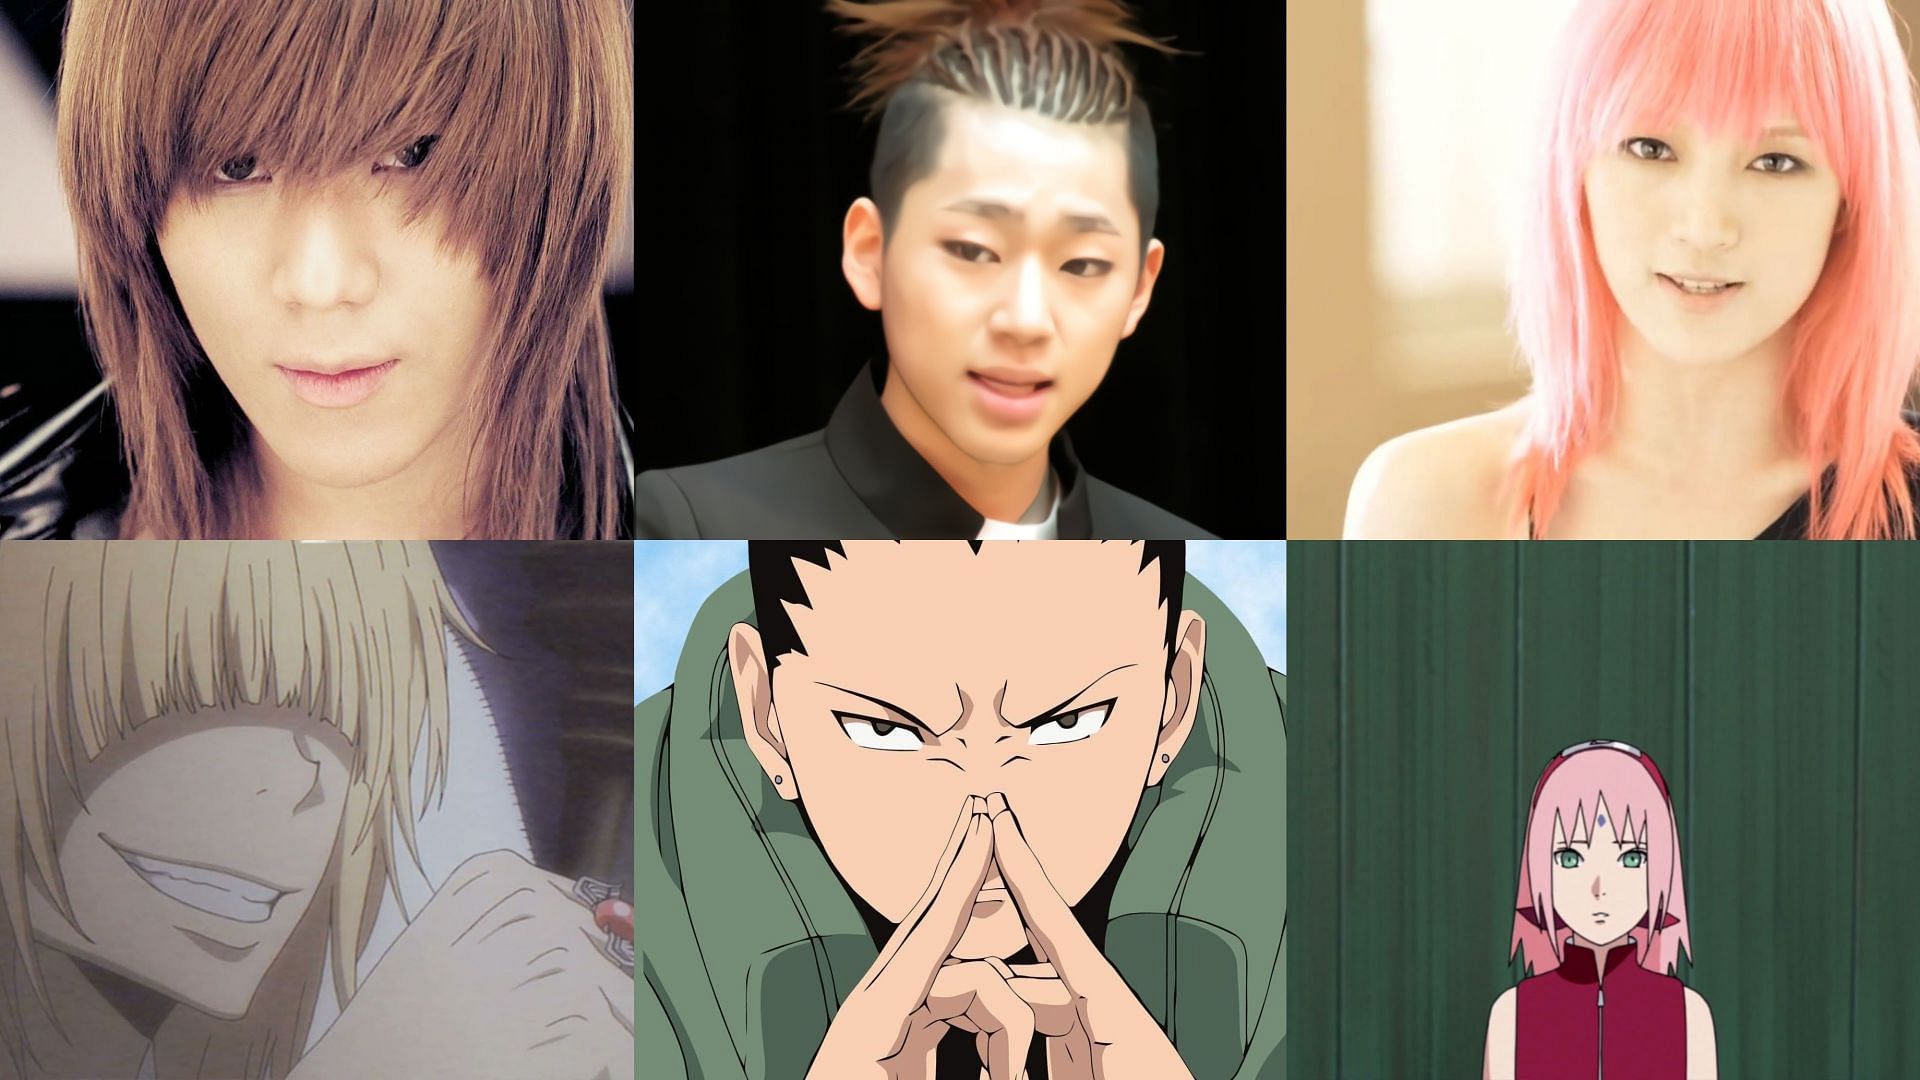 Anime characters who look alike  Forums  MyAnimeListnet